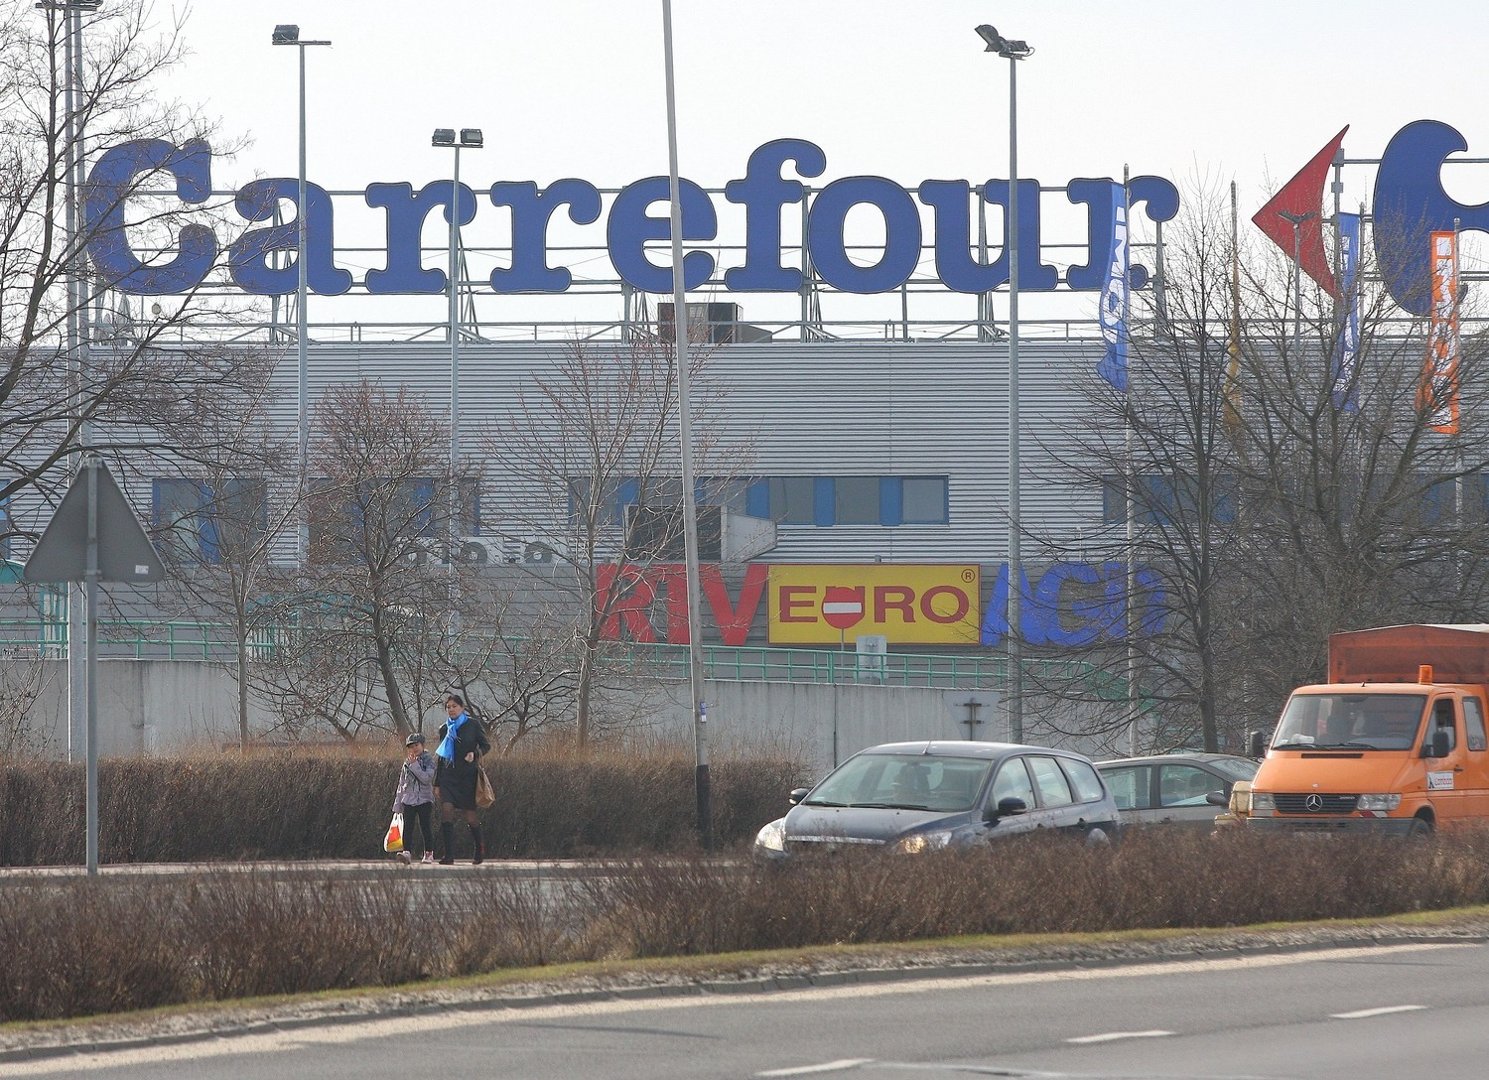 W przyszłym roku logo sieci Carrefour zniknie z Piotrkowa. Zastąpi je logo  sieci Real. | Piotrków Trybunalski Nasze Miasto